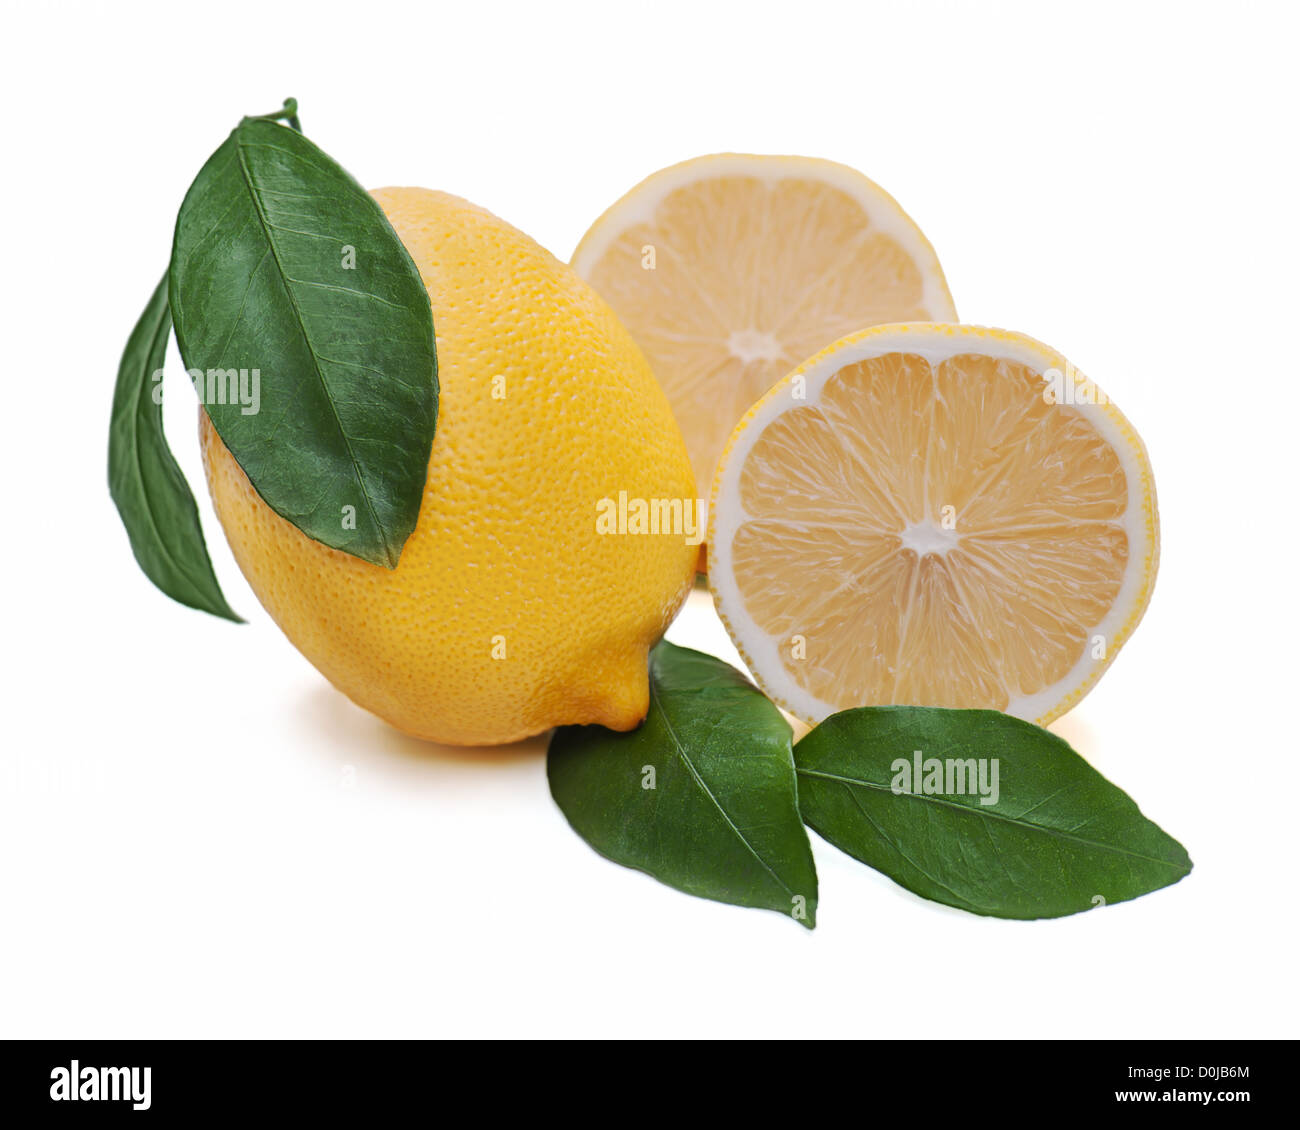 Fresche di agrumi Limoni con taglio e foglie verdi isolati su sfondo bianco Foto Stock